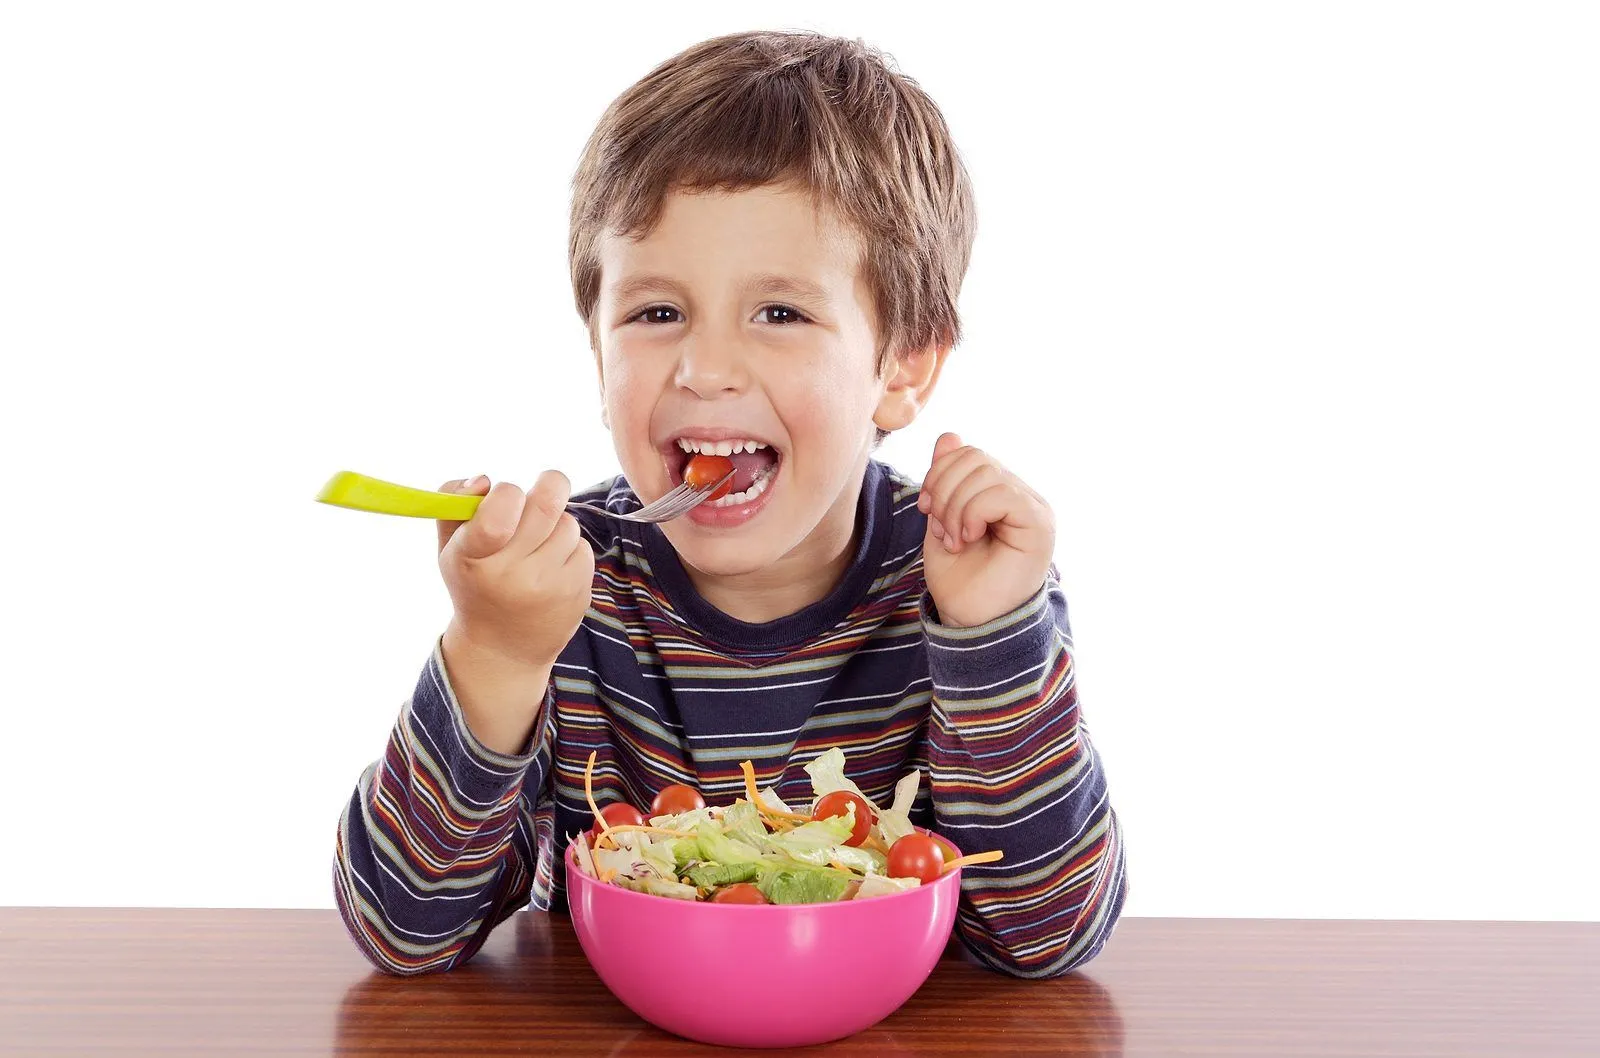 Niño comiendo ensalada :: Imágenes y fotos